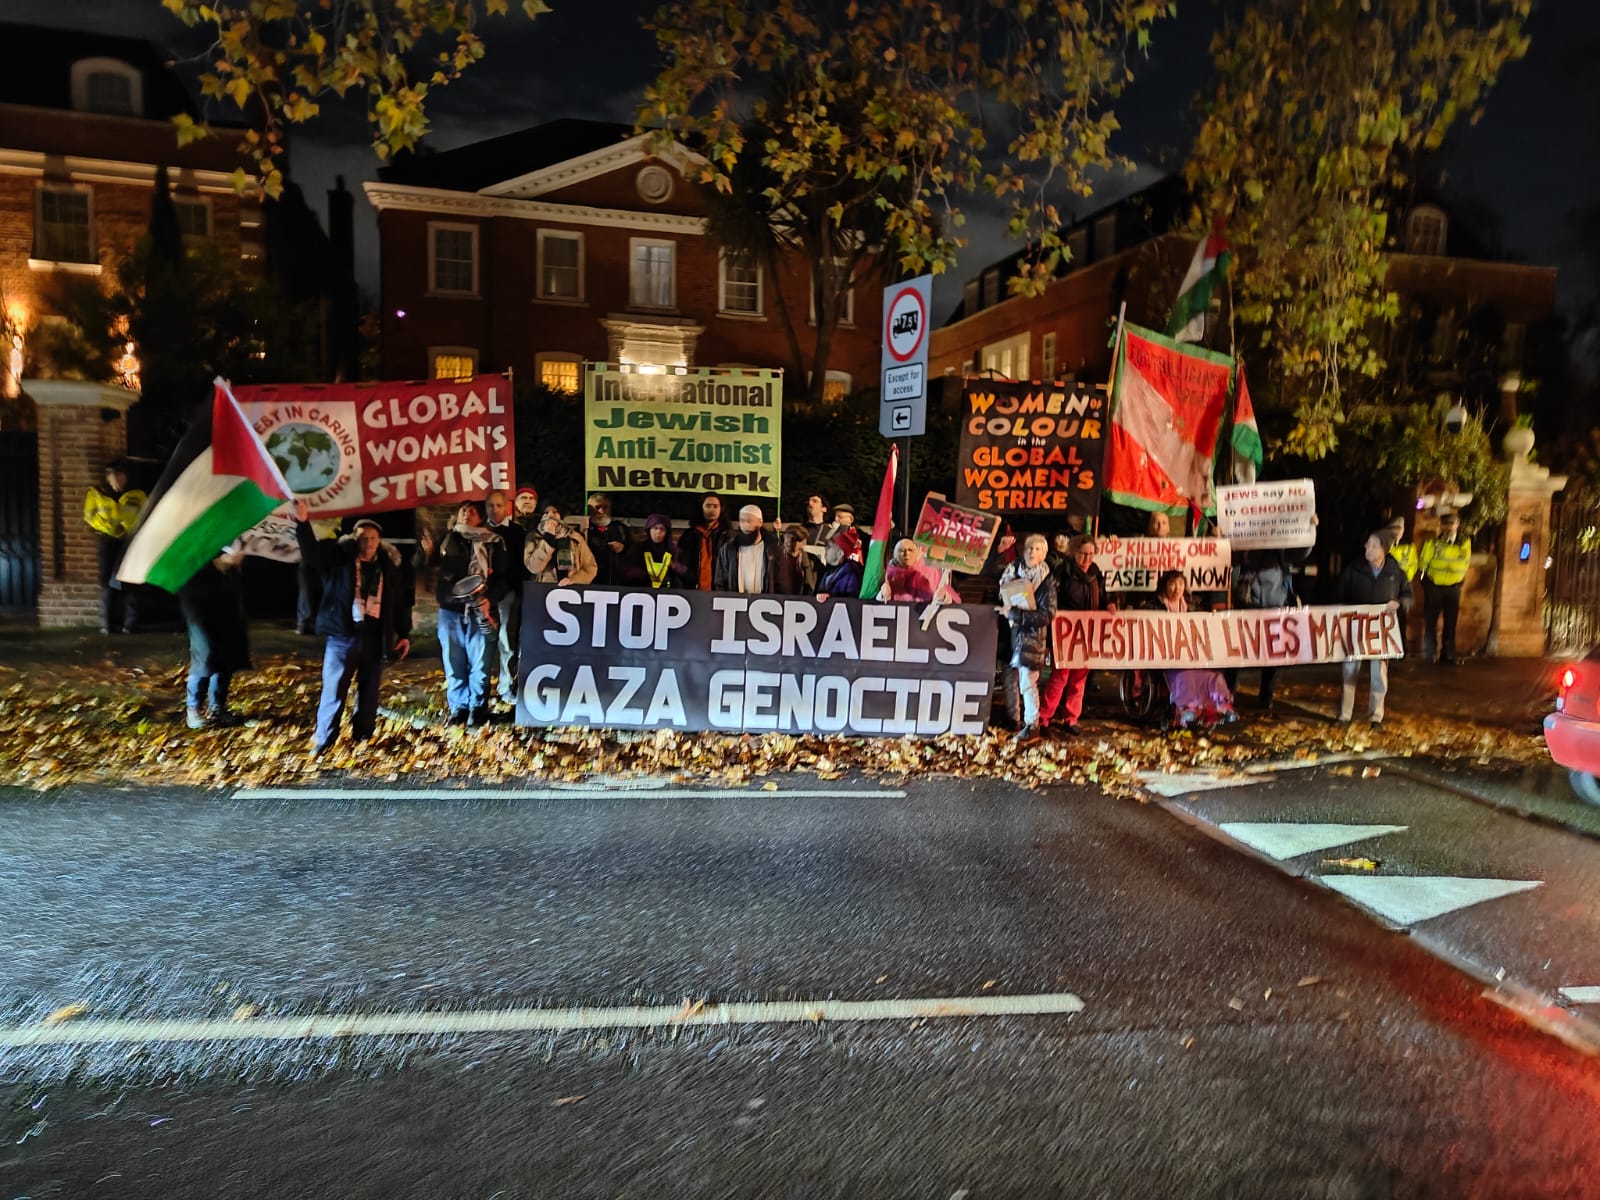 Outside the Israeli ambassador's residence in London